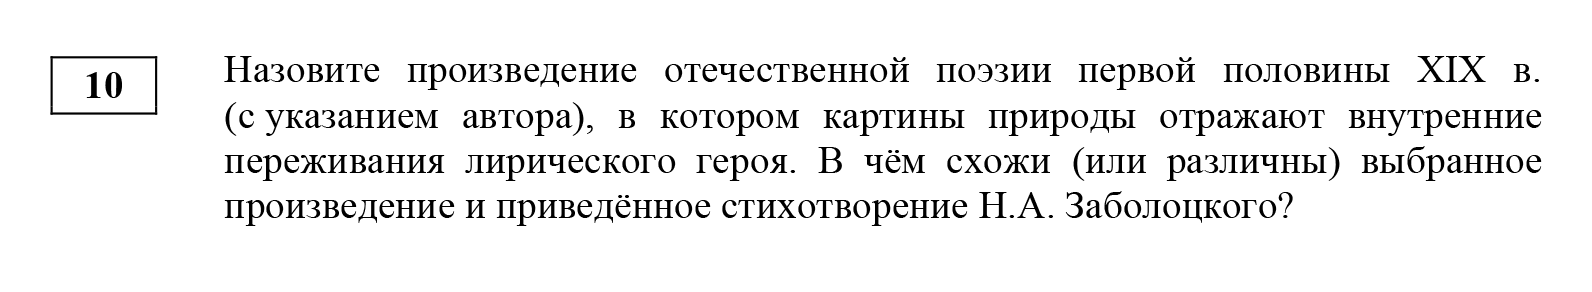 Пример задания повышенной сложности. Источник: fipi.ru